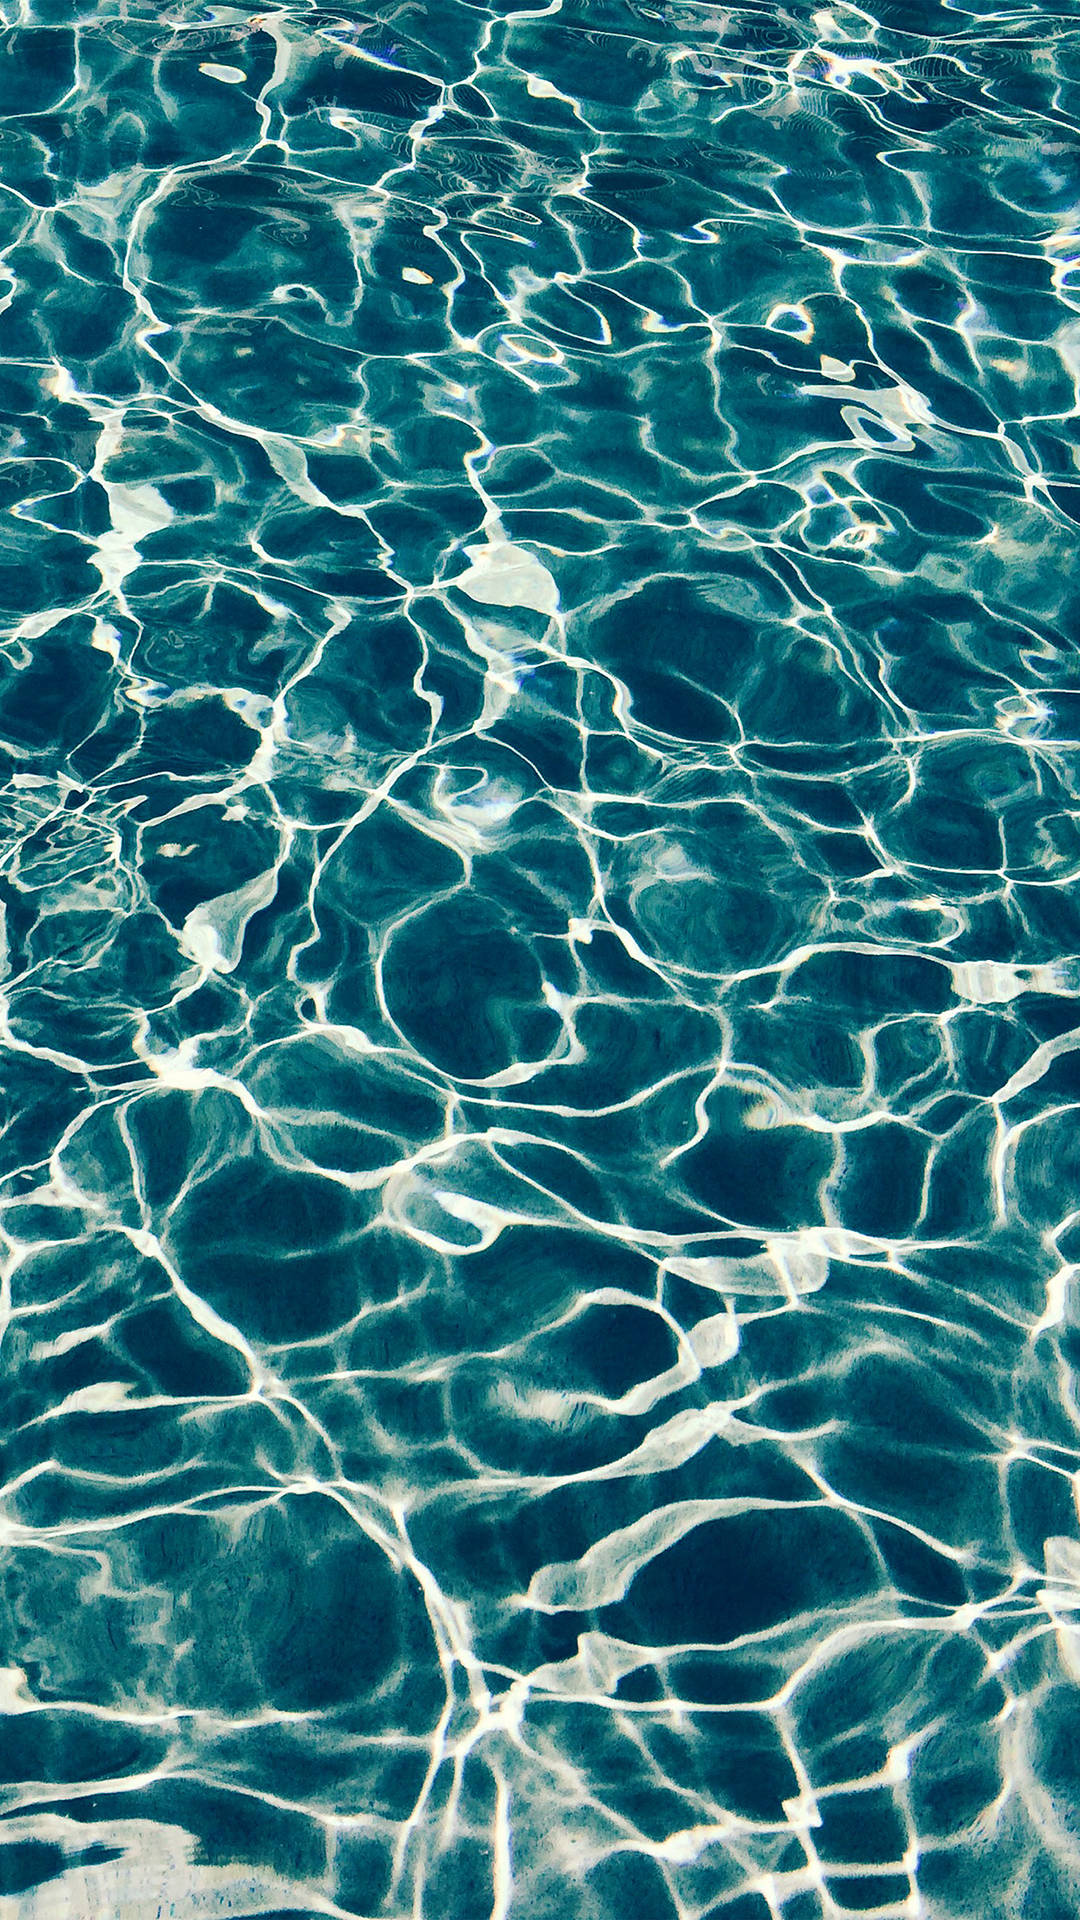 Ennärbild Av En Blå Pool Med Rippel-effekter Wallpaper